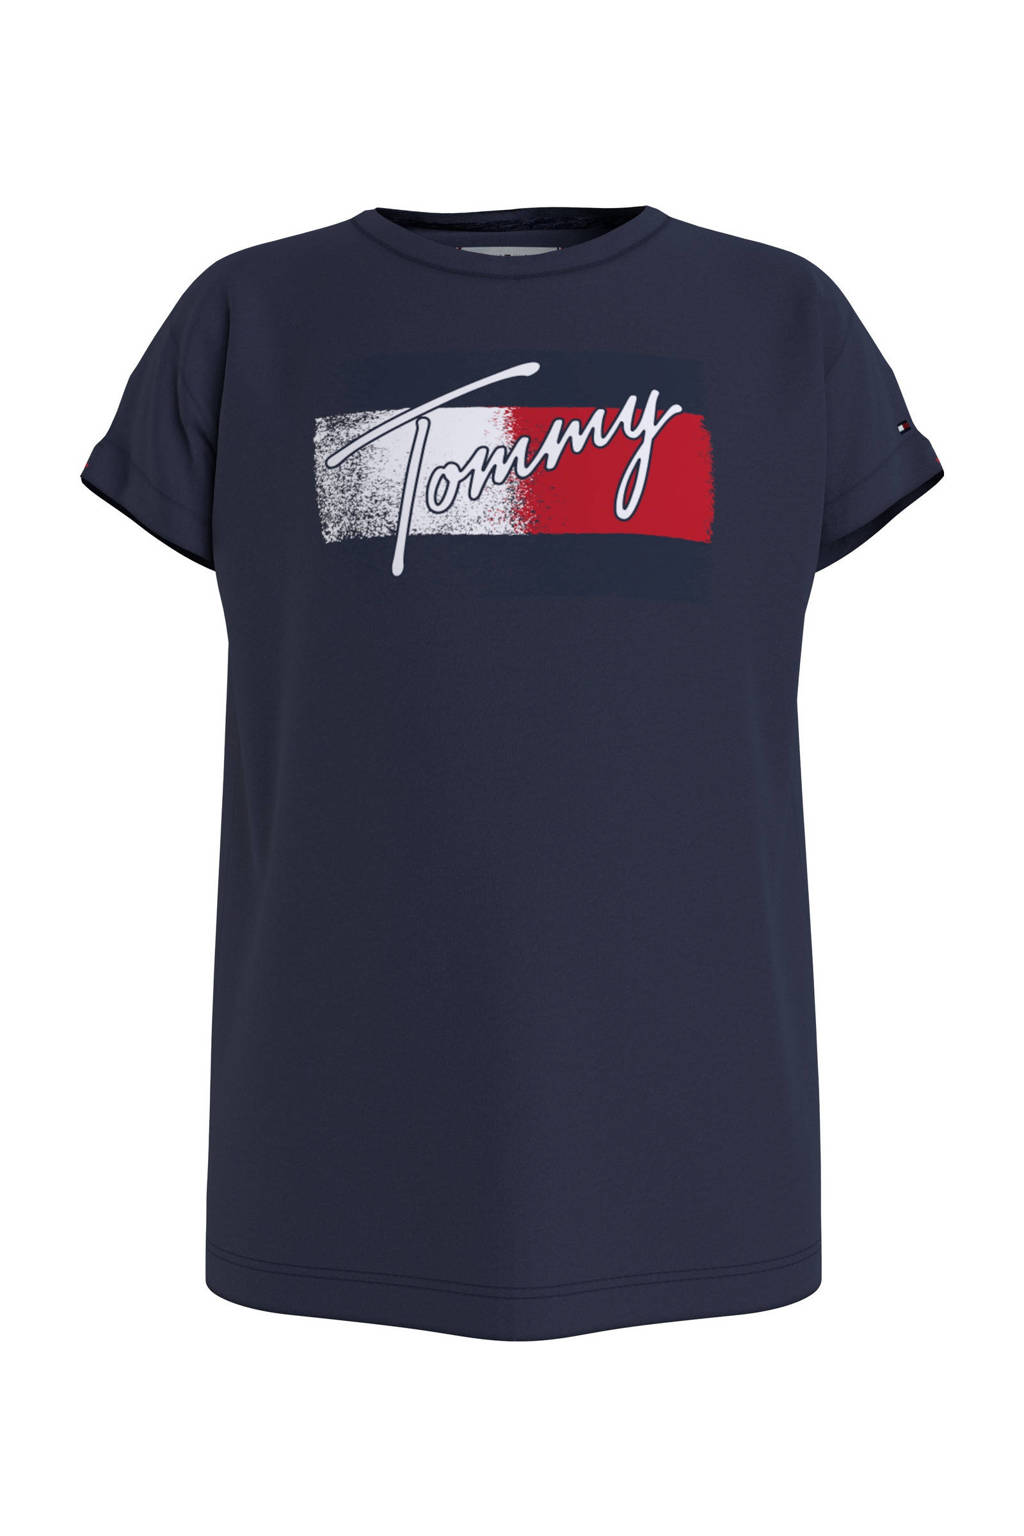 Donkerblauw, rood en witte meisjes Tommy Hilfiger T-shirt van biologisch katoen met korte mouwen en ronde hals